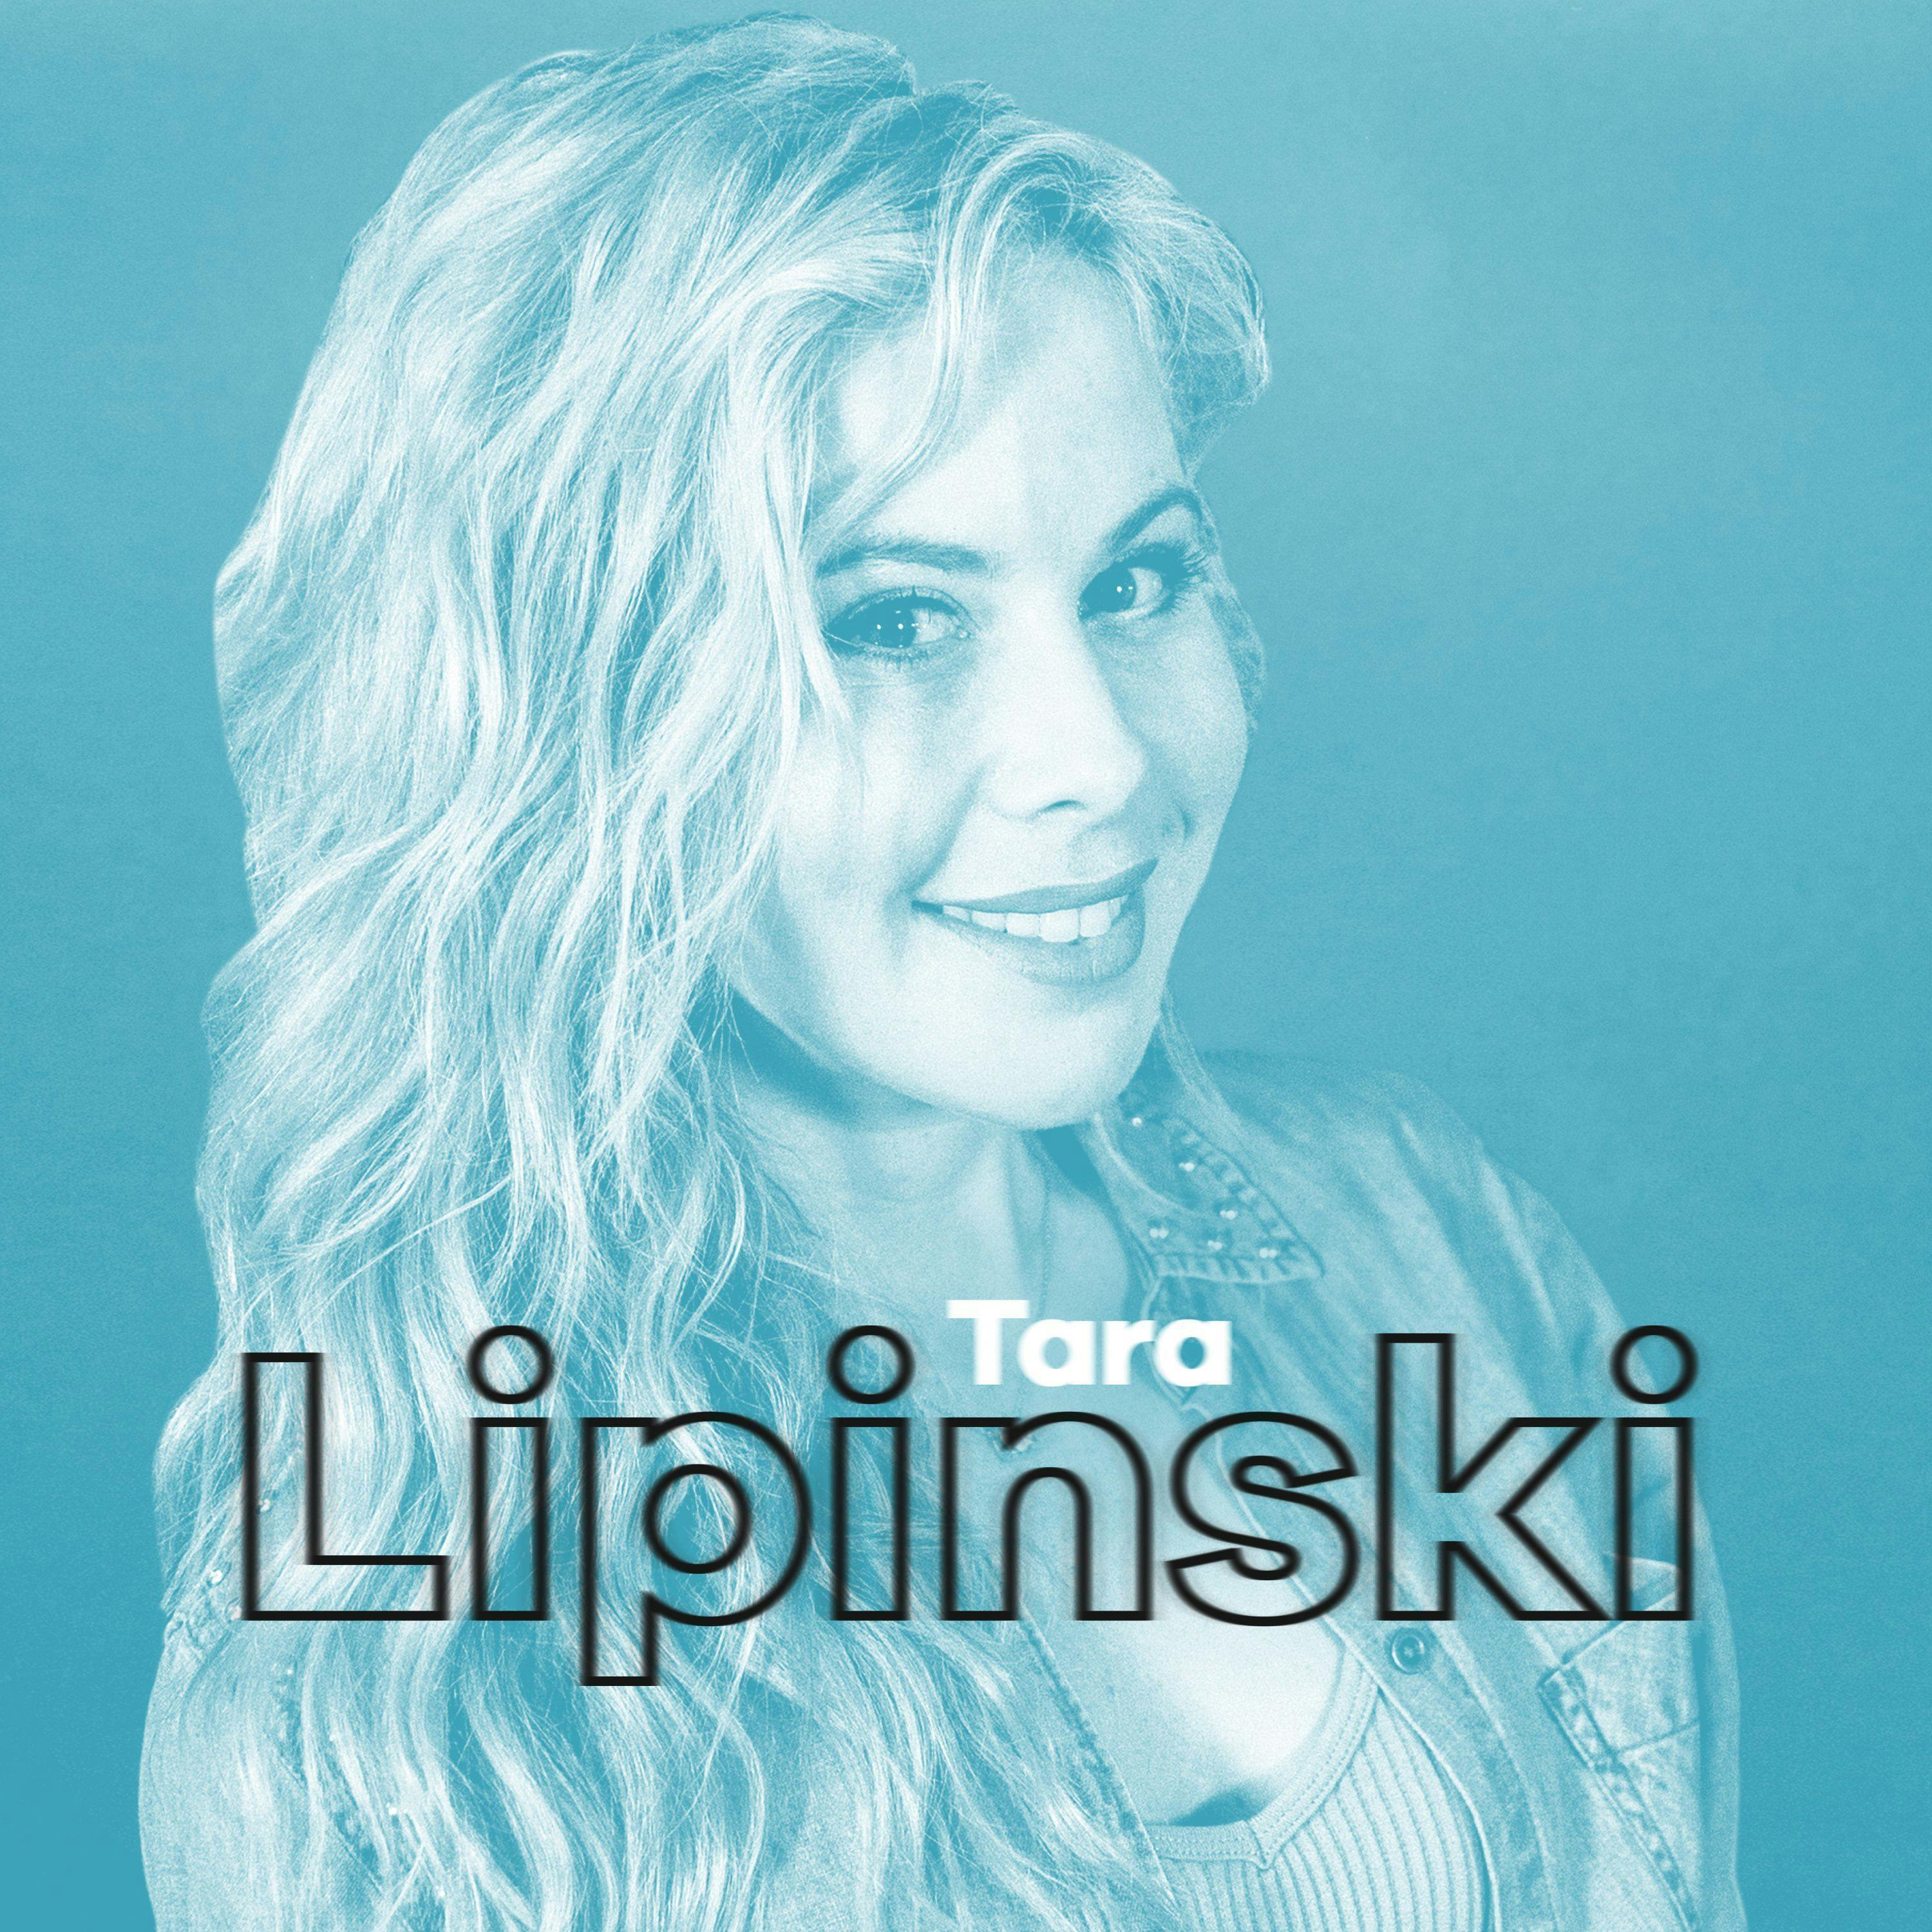 Ep 6: Tara Lipinski